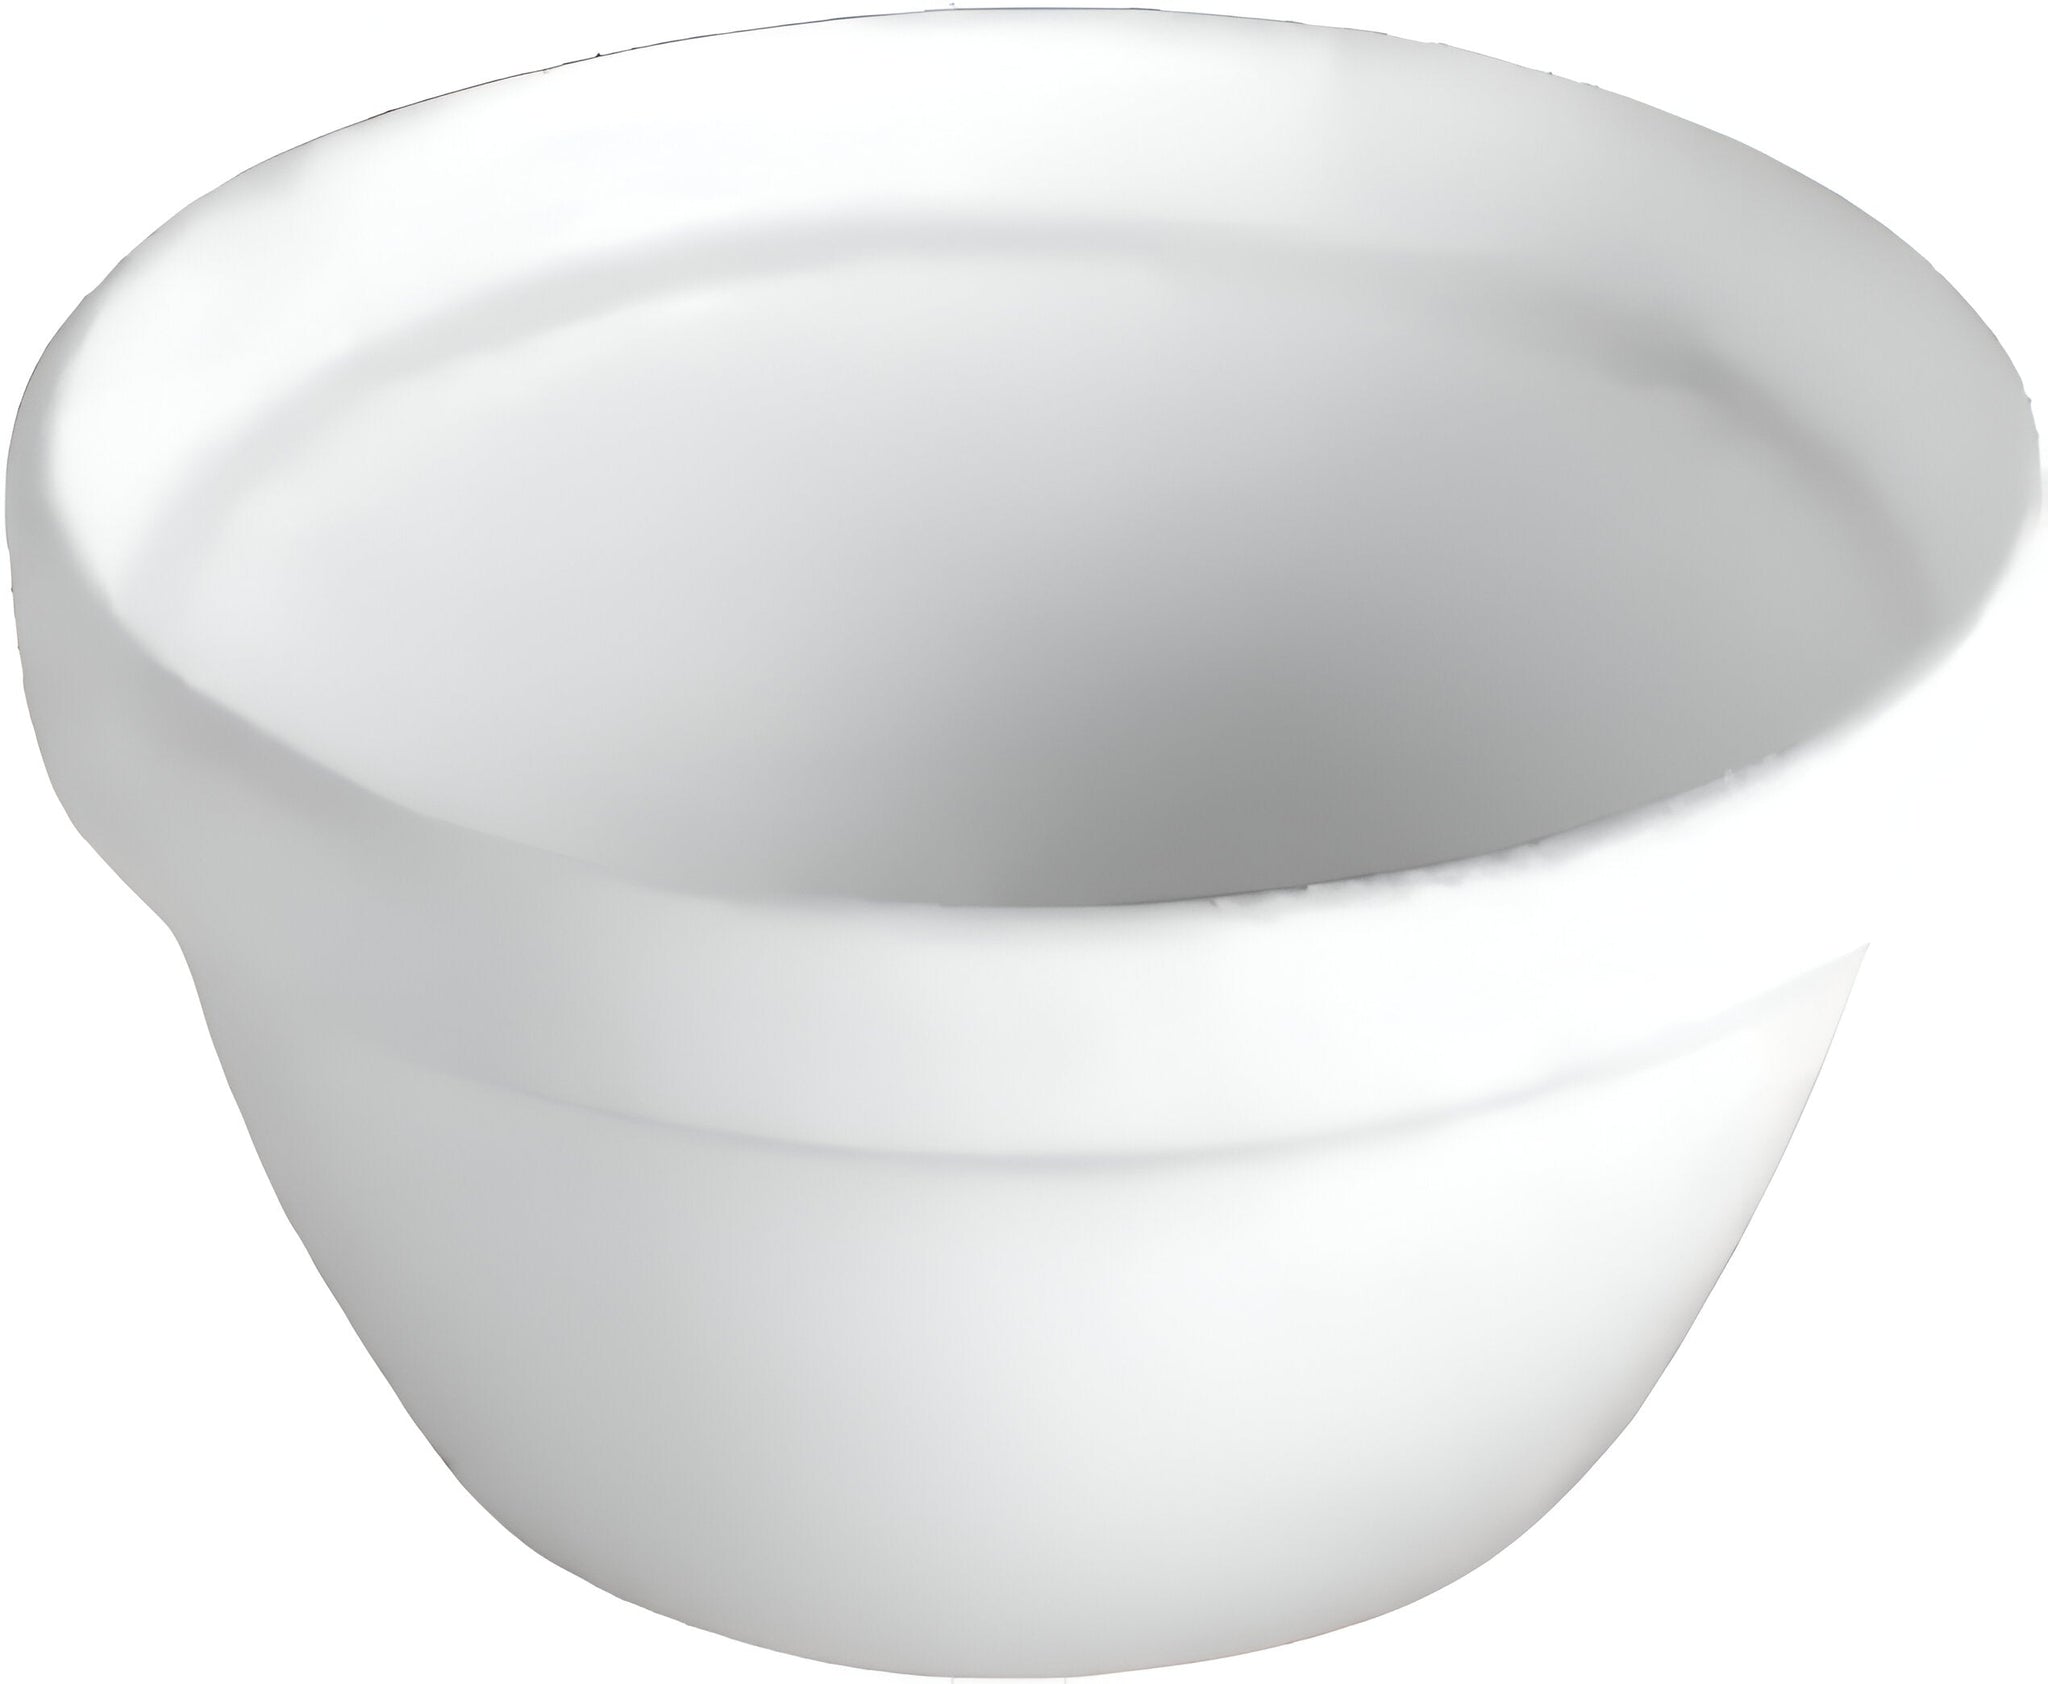 Bugambilia - Mod 10" x 6" Large Grey Round Bowl - TFRD24-MOD